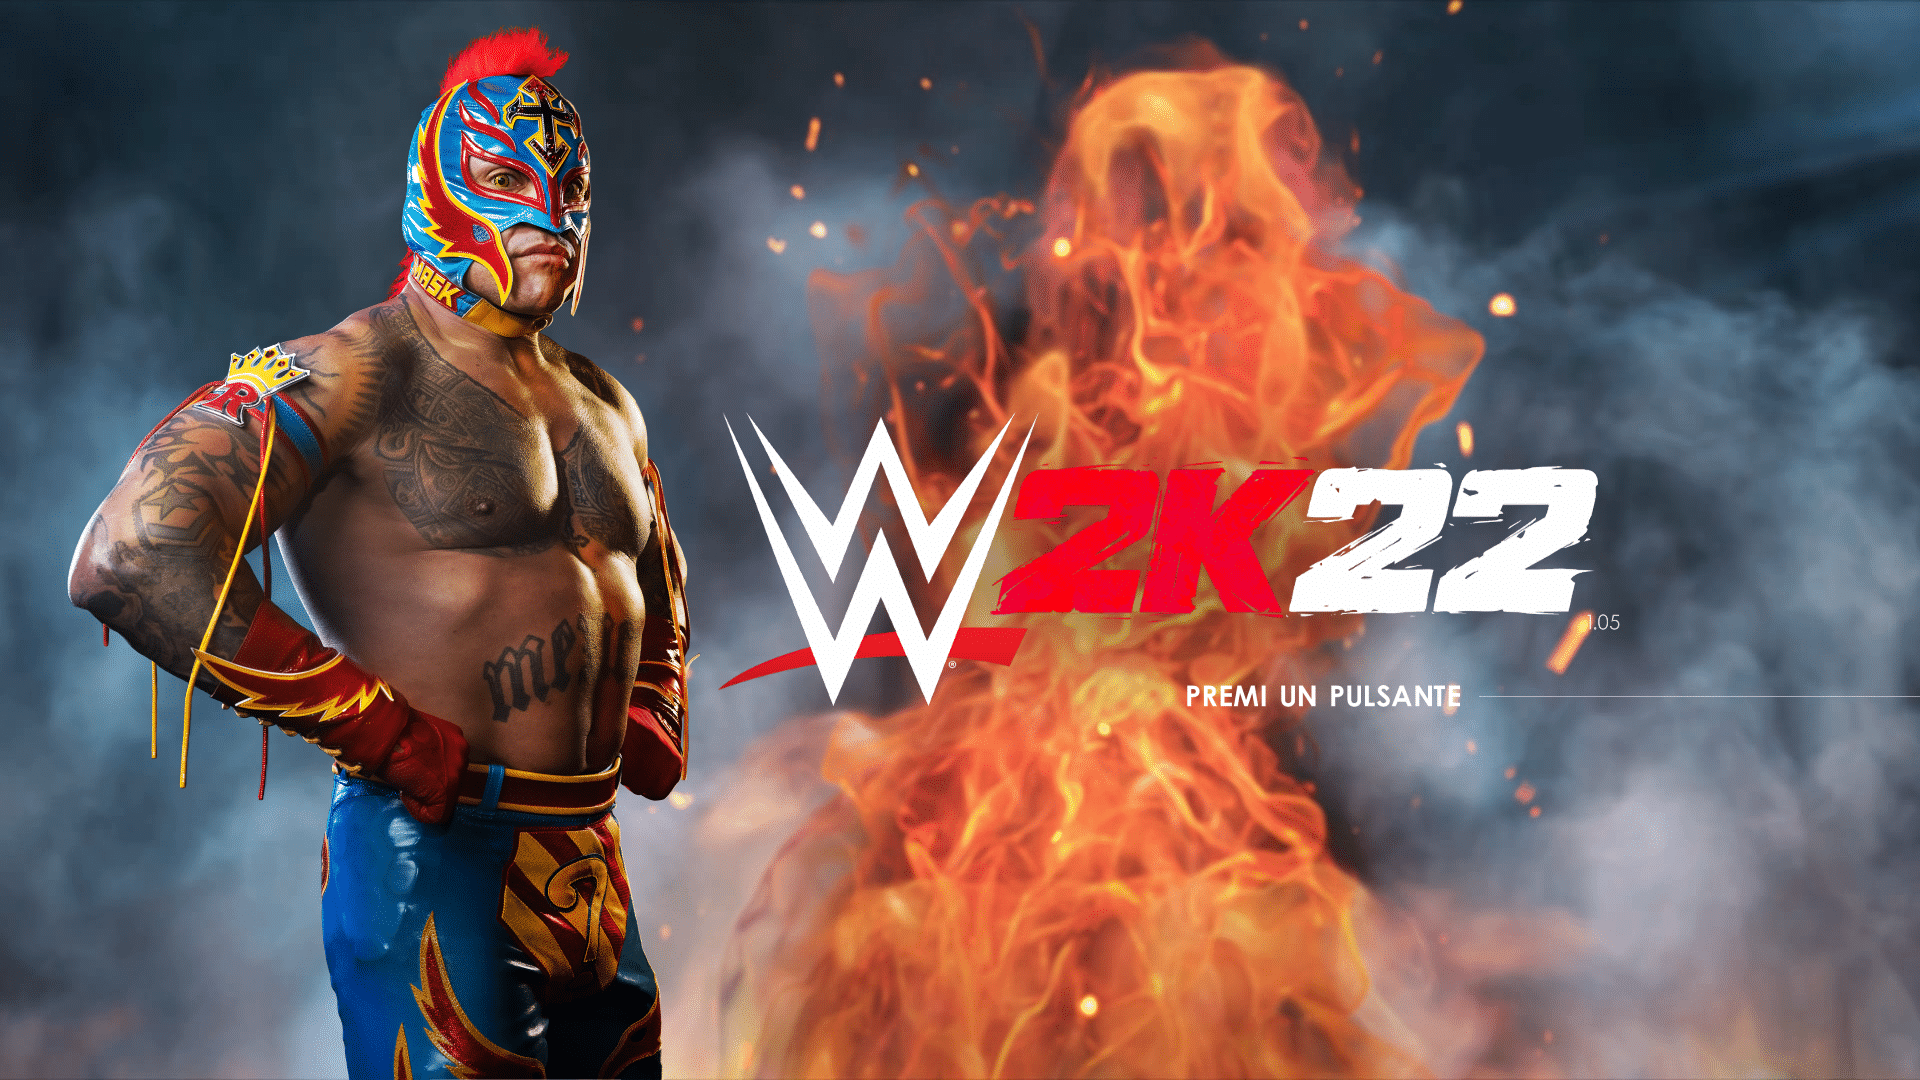 La recensione di WWE 2K22: una nuova era per i videogiochi di wrestling thumbnail